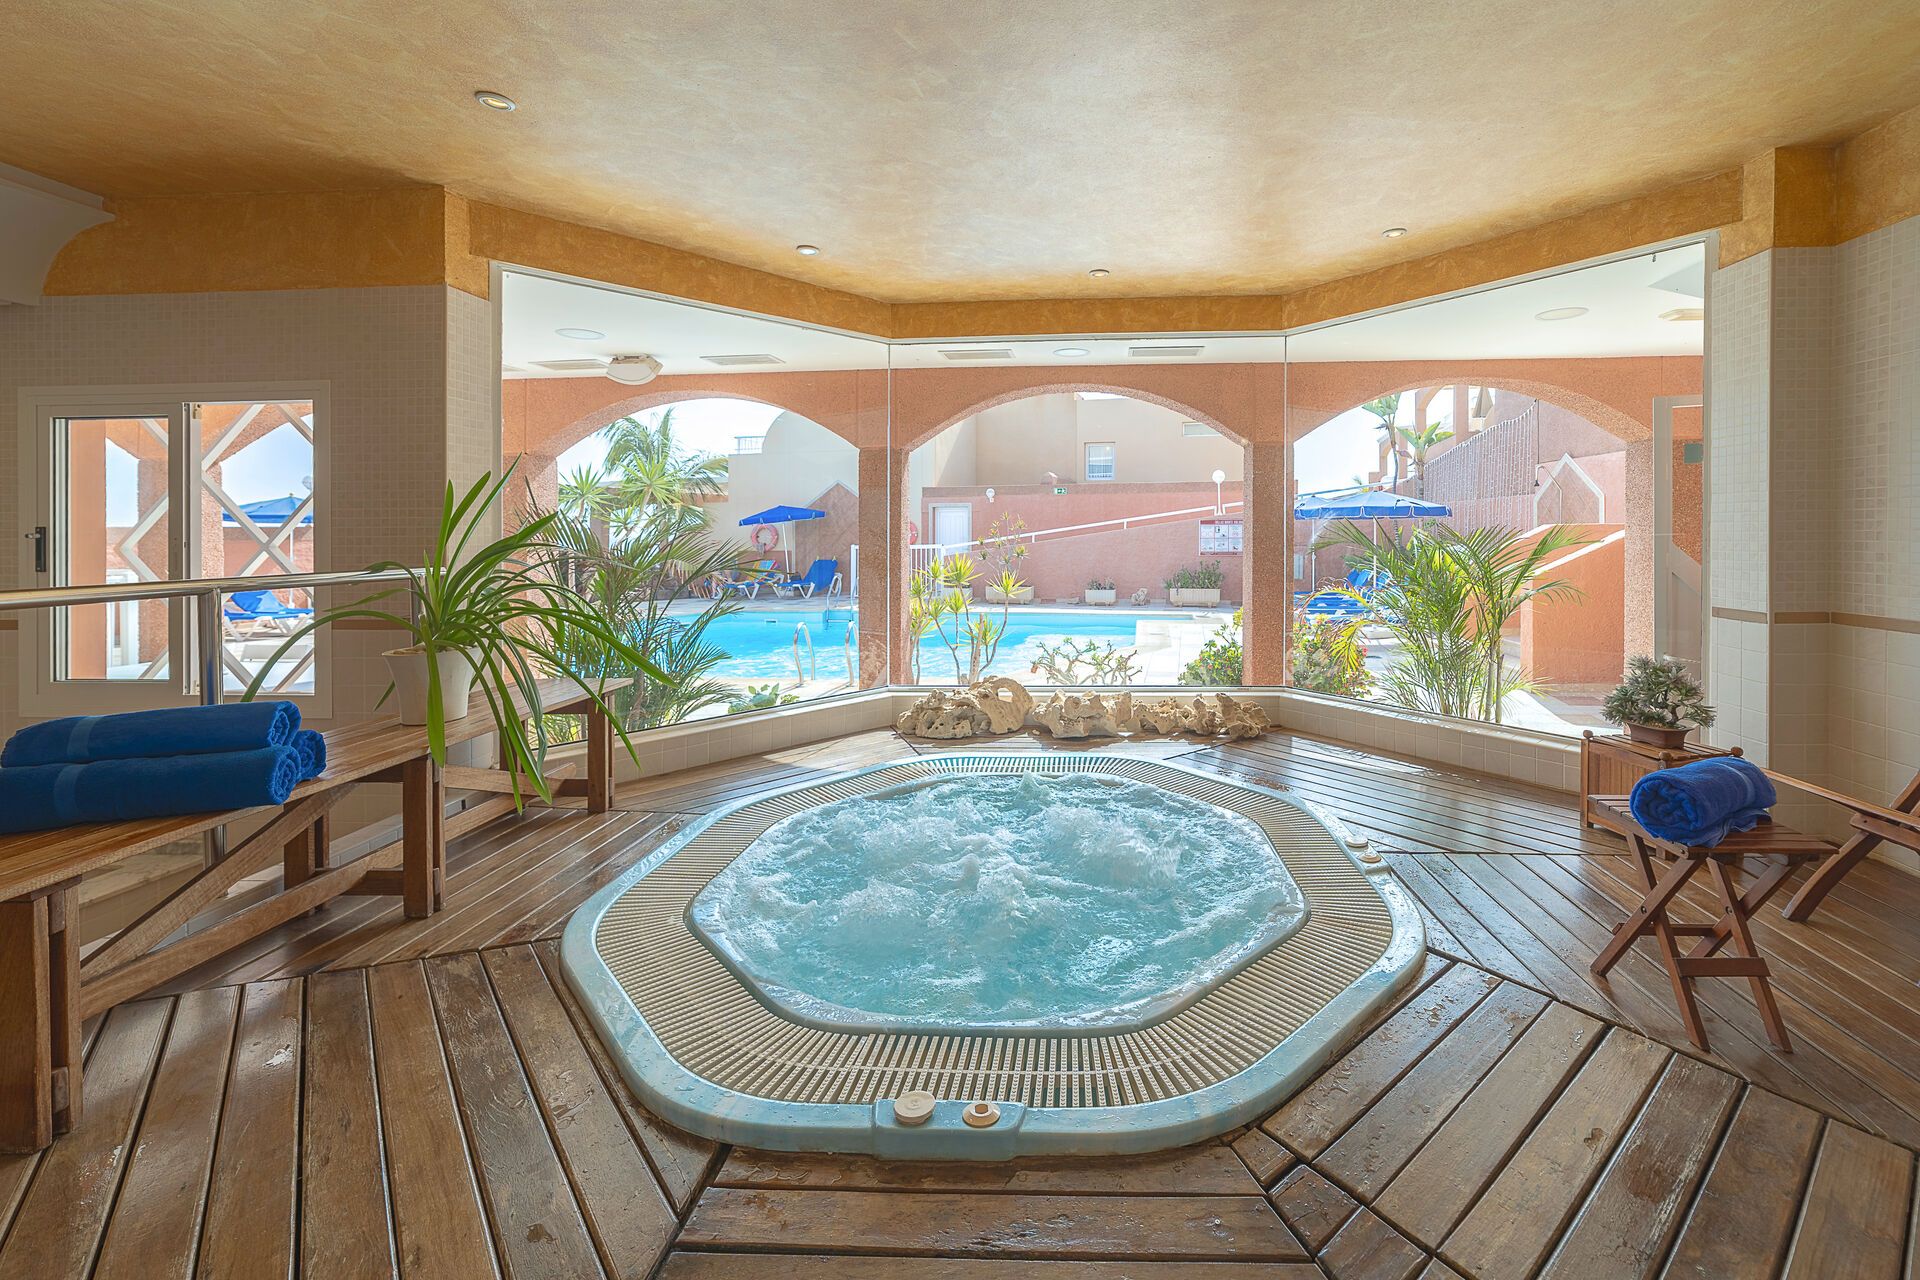 Canaries - Fuerteventura - Espagne - Hôtel Villas Monte Solana 4*